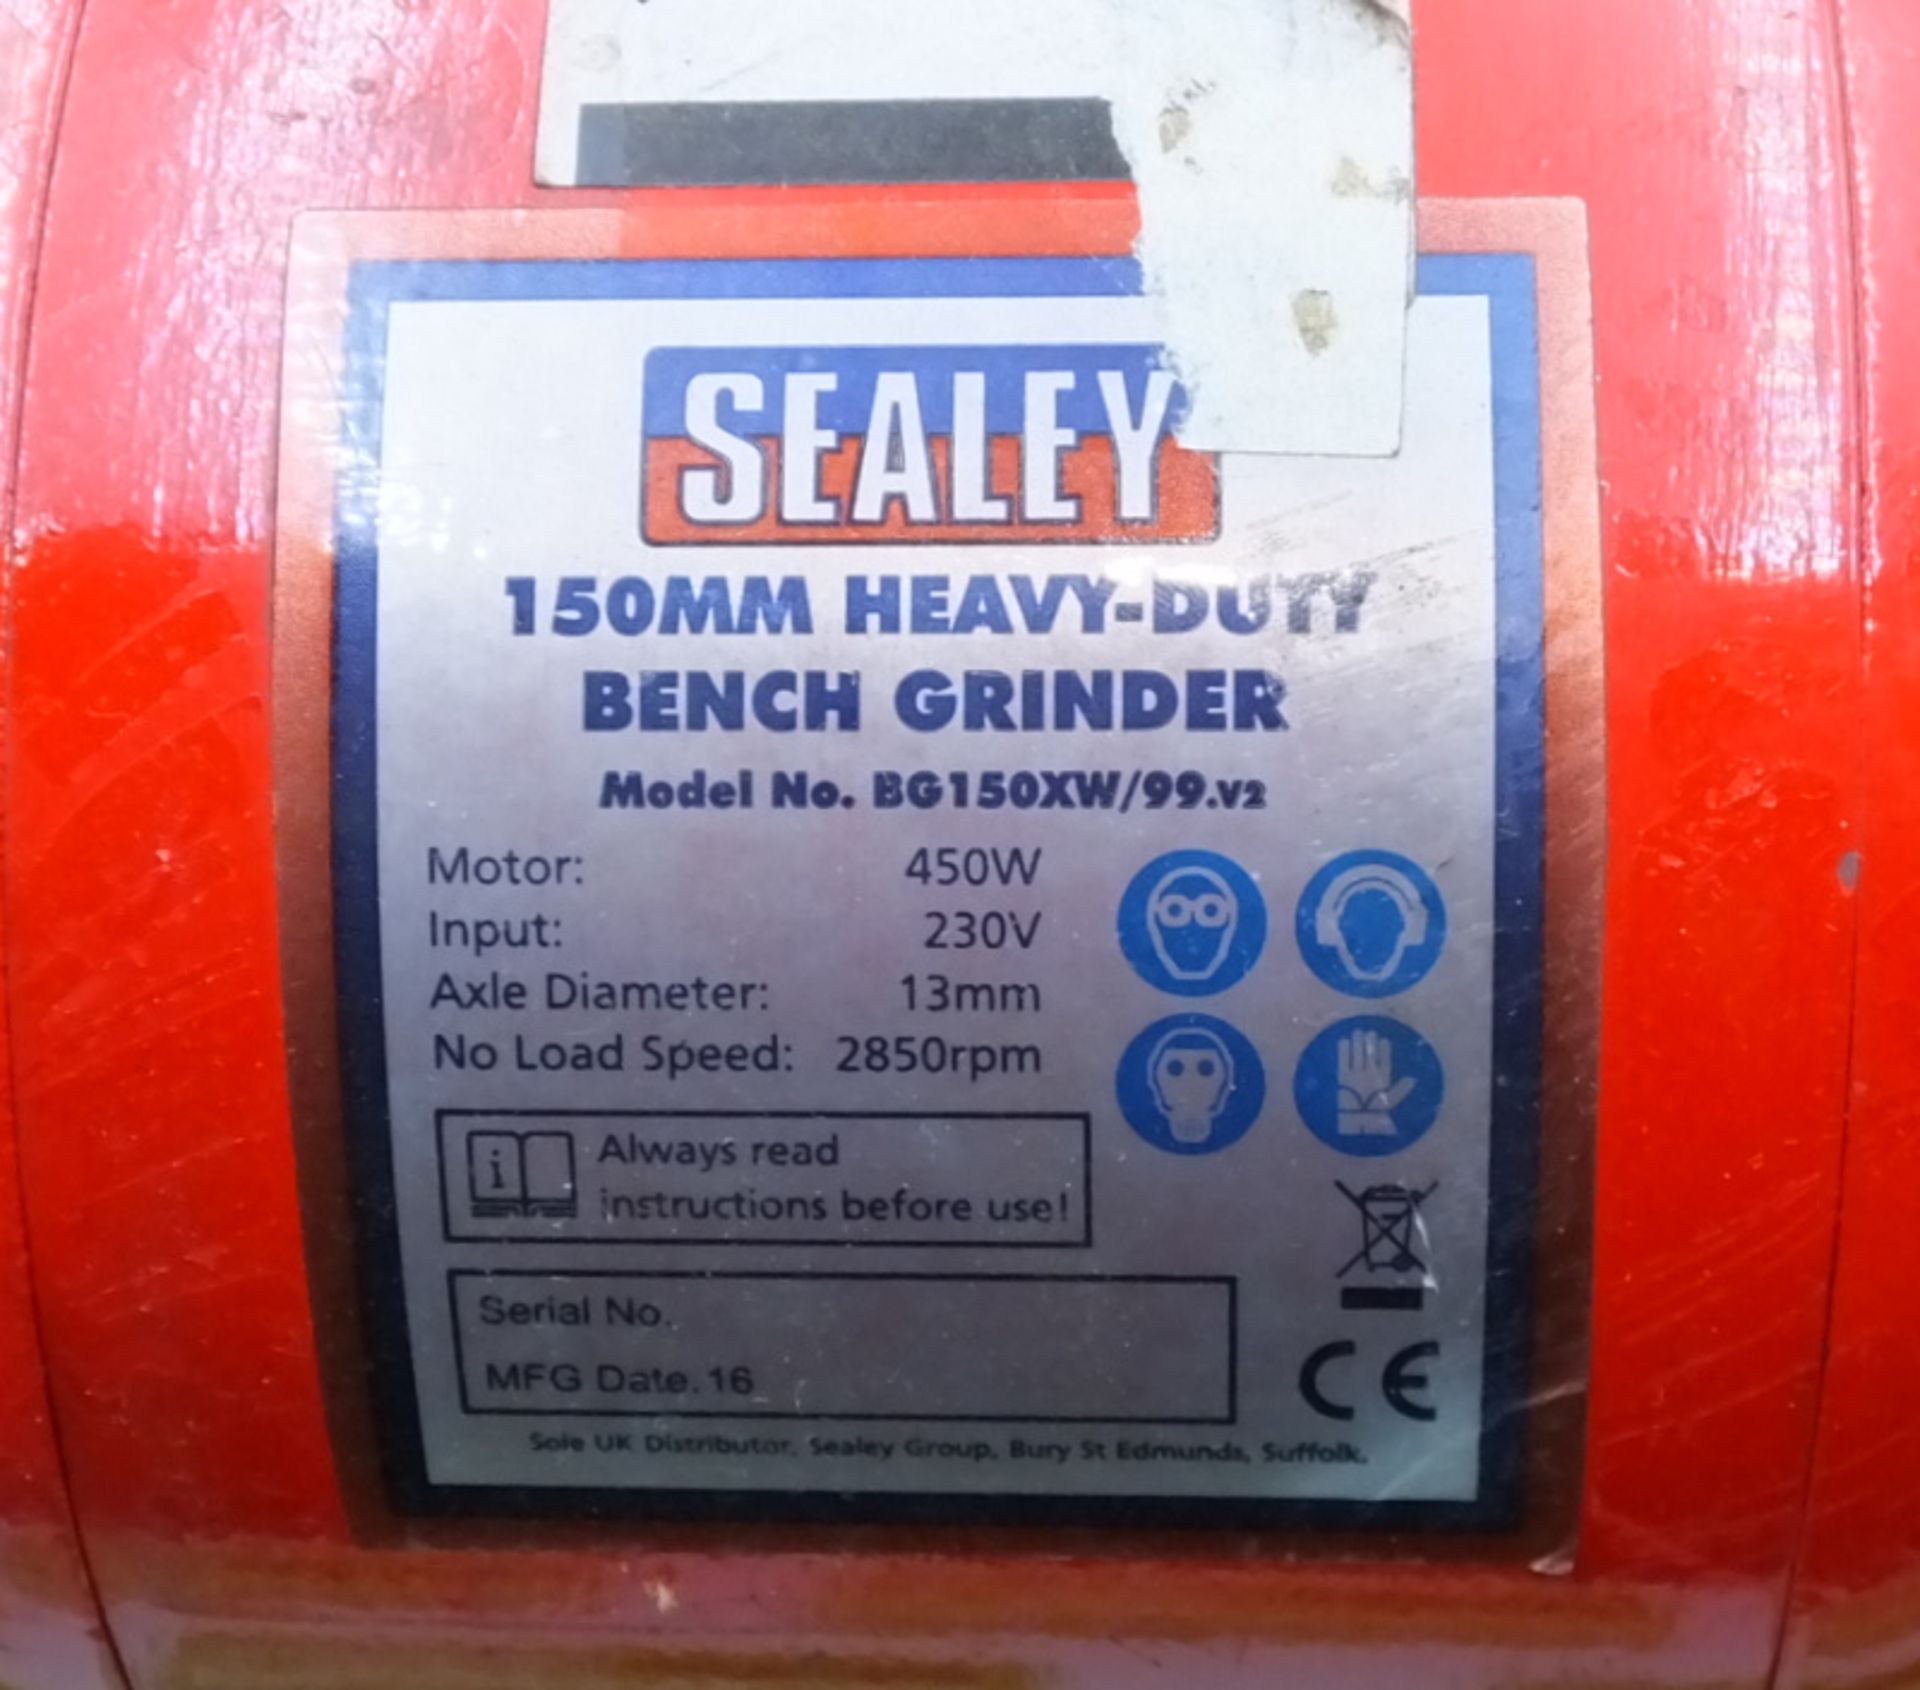 Sealey BG150XW/99.V2 150mm heavy duty bench grinder 230V - Image 3 of 5